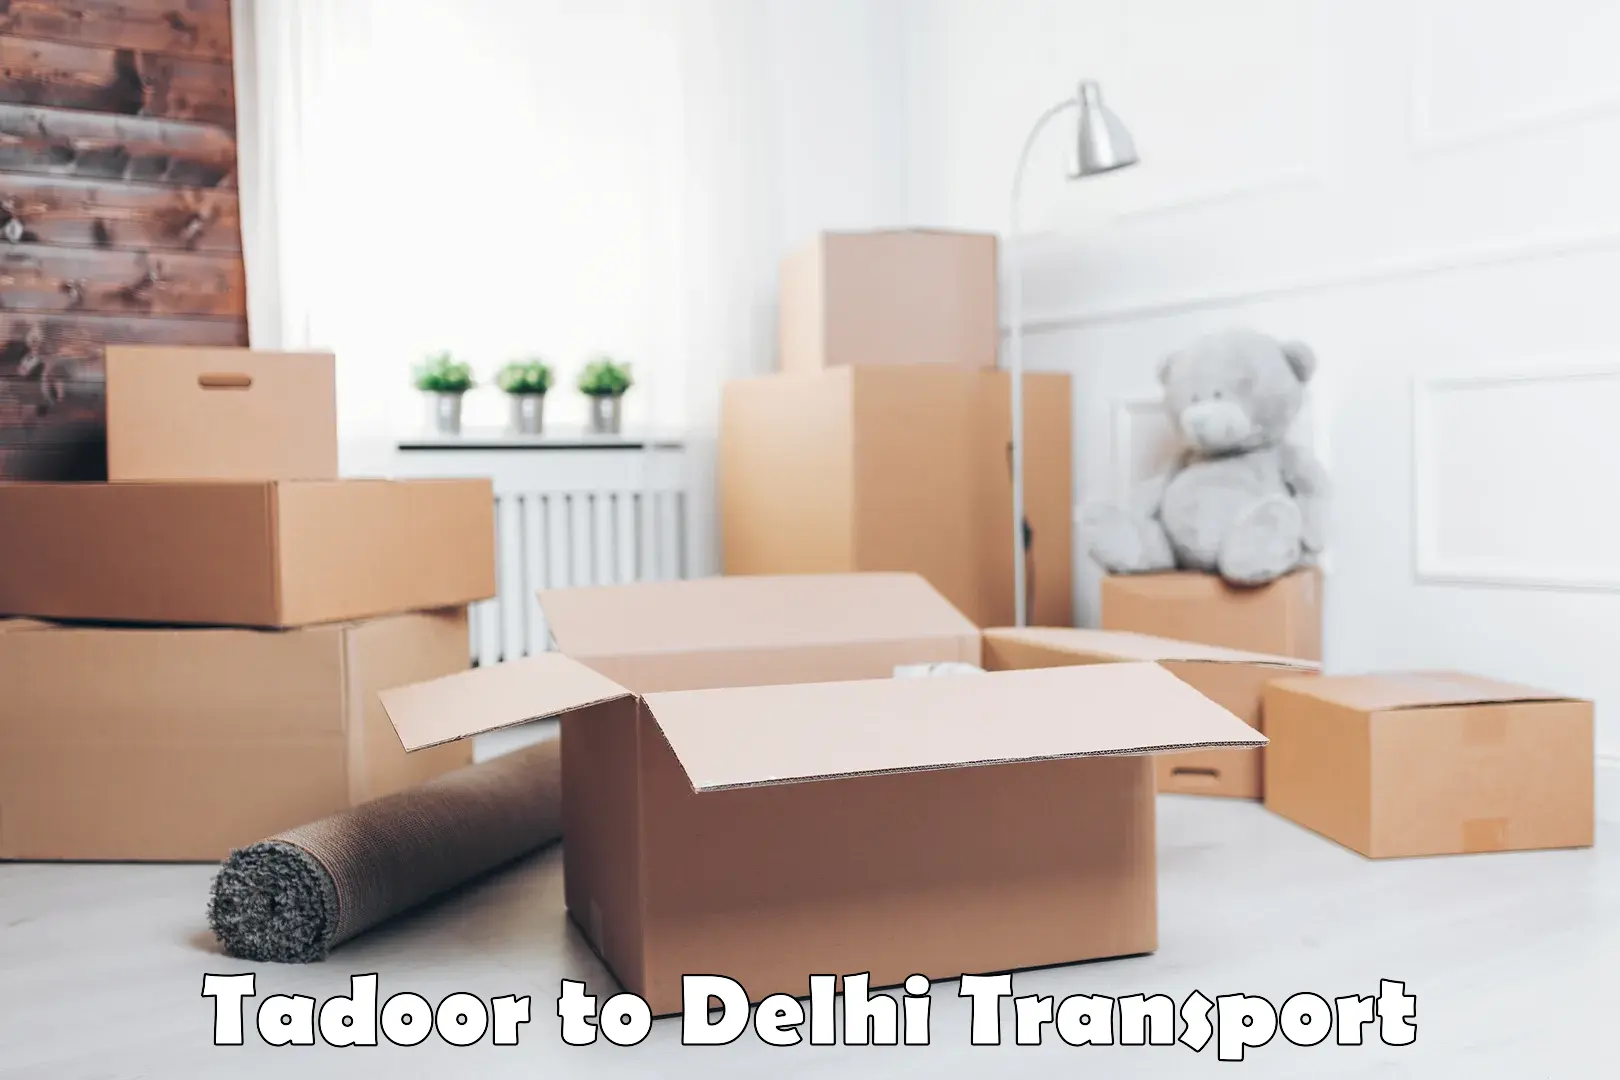 India truck logistics services Tadoor to Delhi